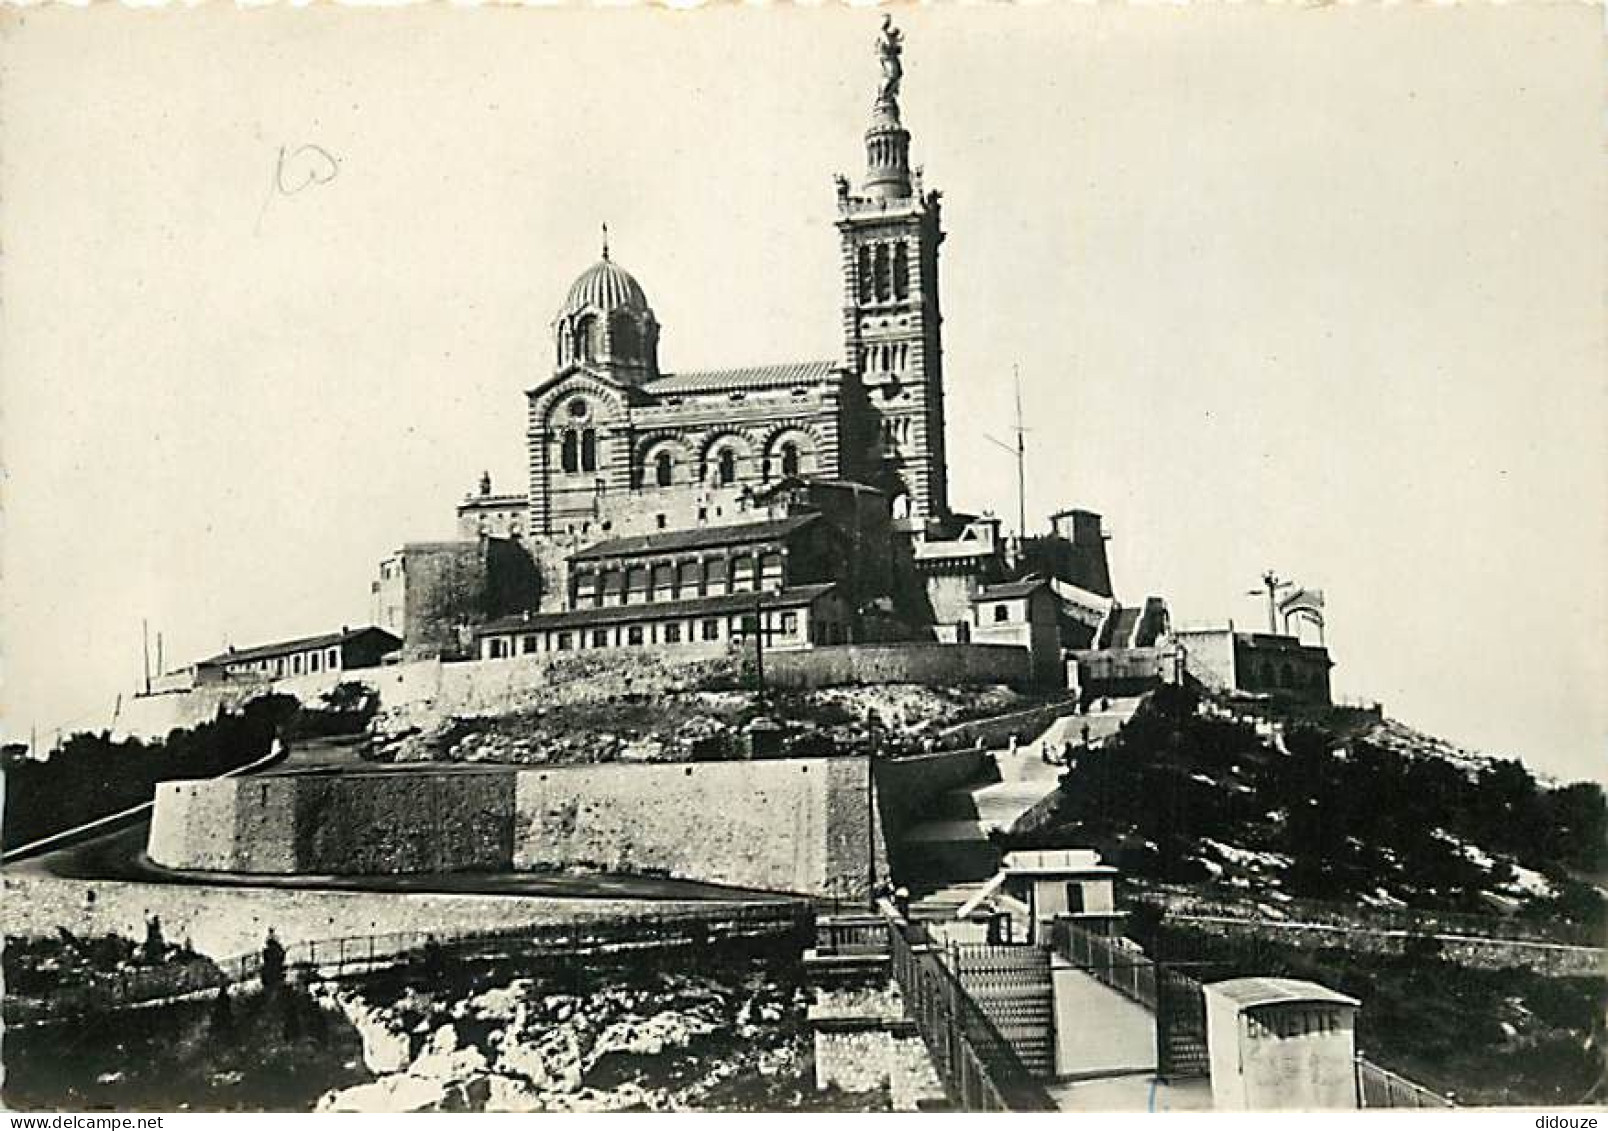 13 - Marseille - Basilique De Notre-Dame De La Garde - CPSM Grand Format - Carte Neuve - Voir Scans Recto-Verso - Notre-Dame De La Garde, Aufzug Und Marienfigur